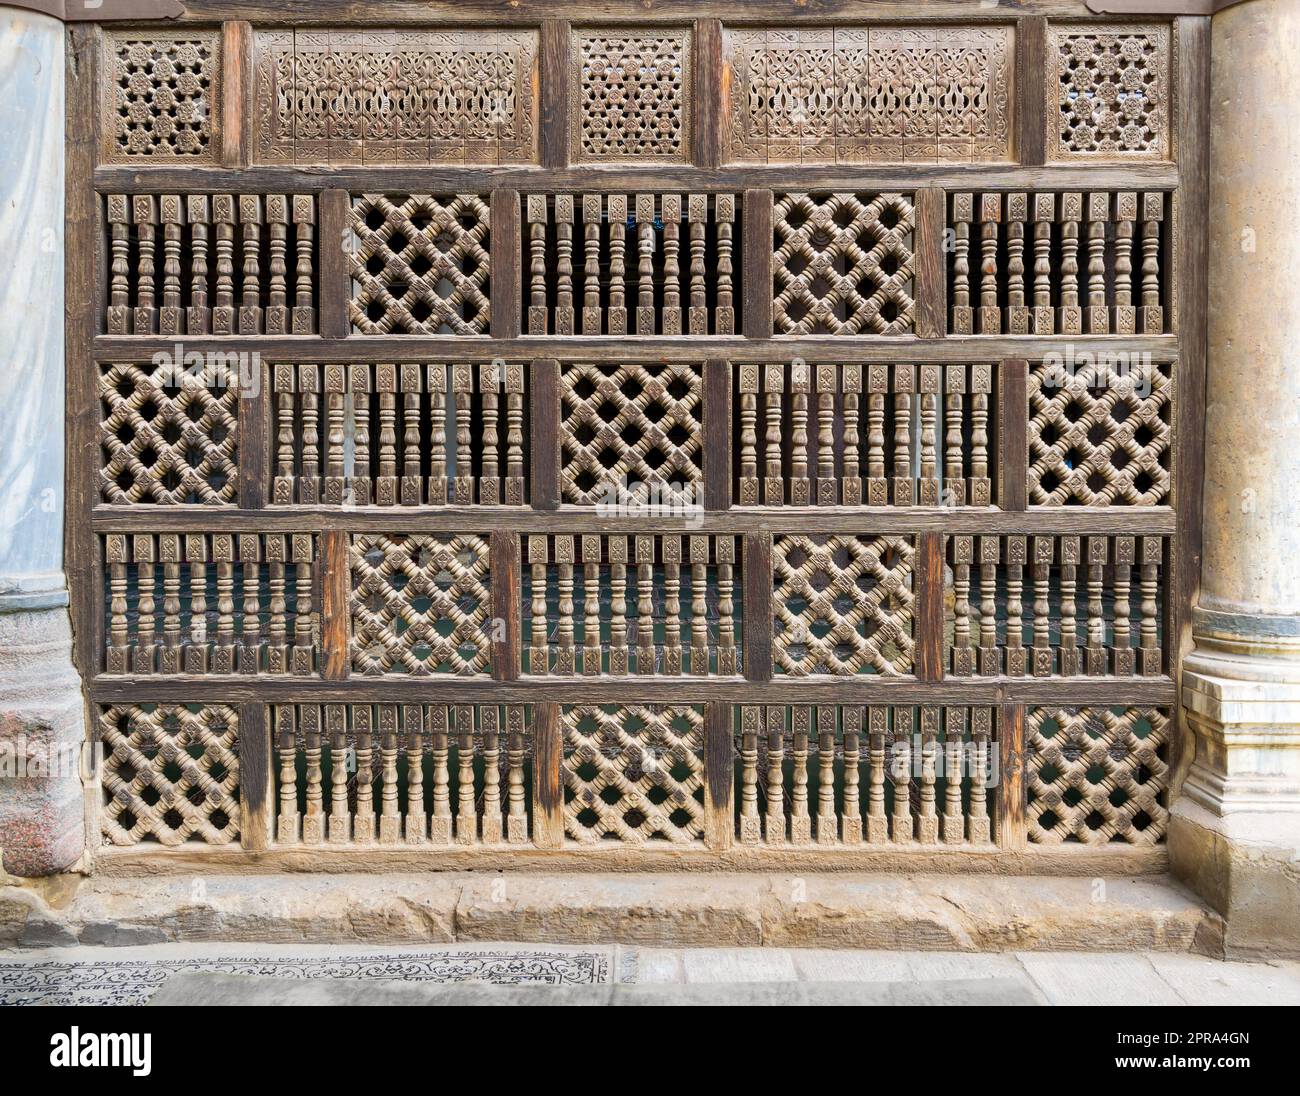 Vue de face du mur d'arabisque en bois entrelacé - Mashrabiya, le Caire, Egypte Banque D'Images